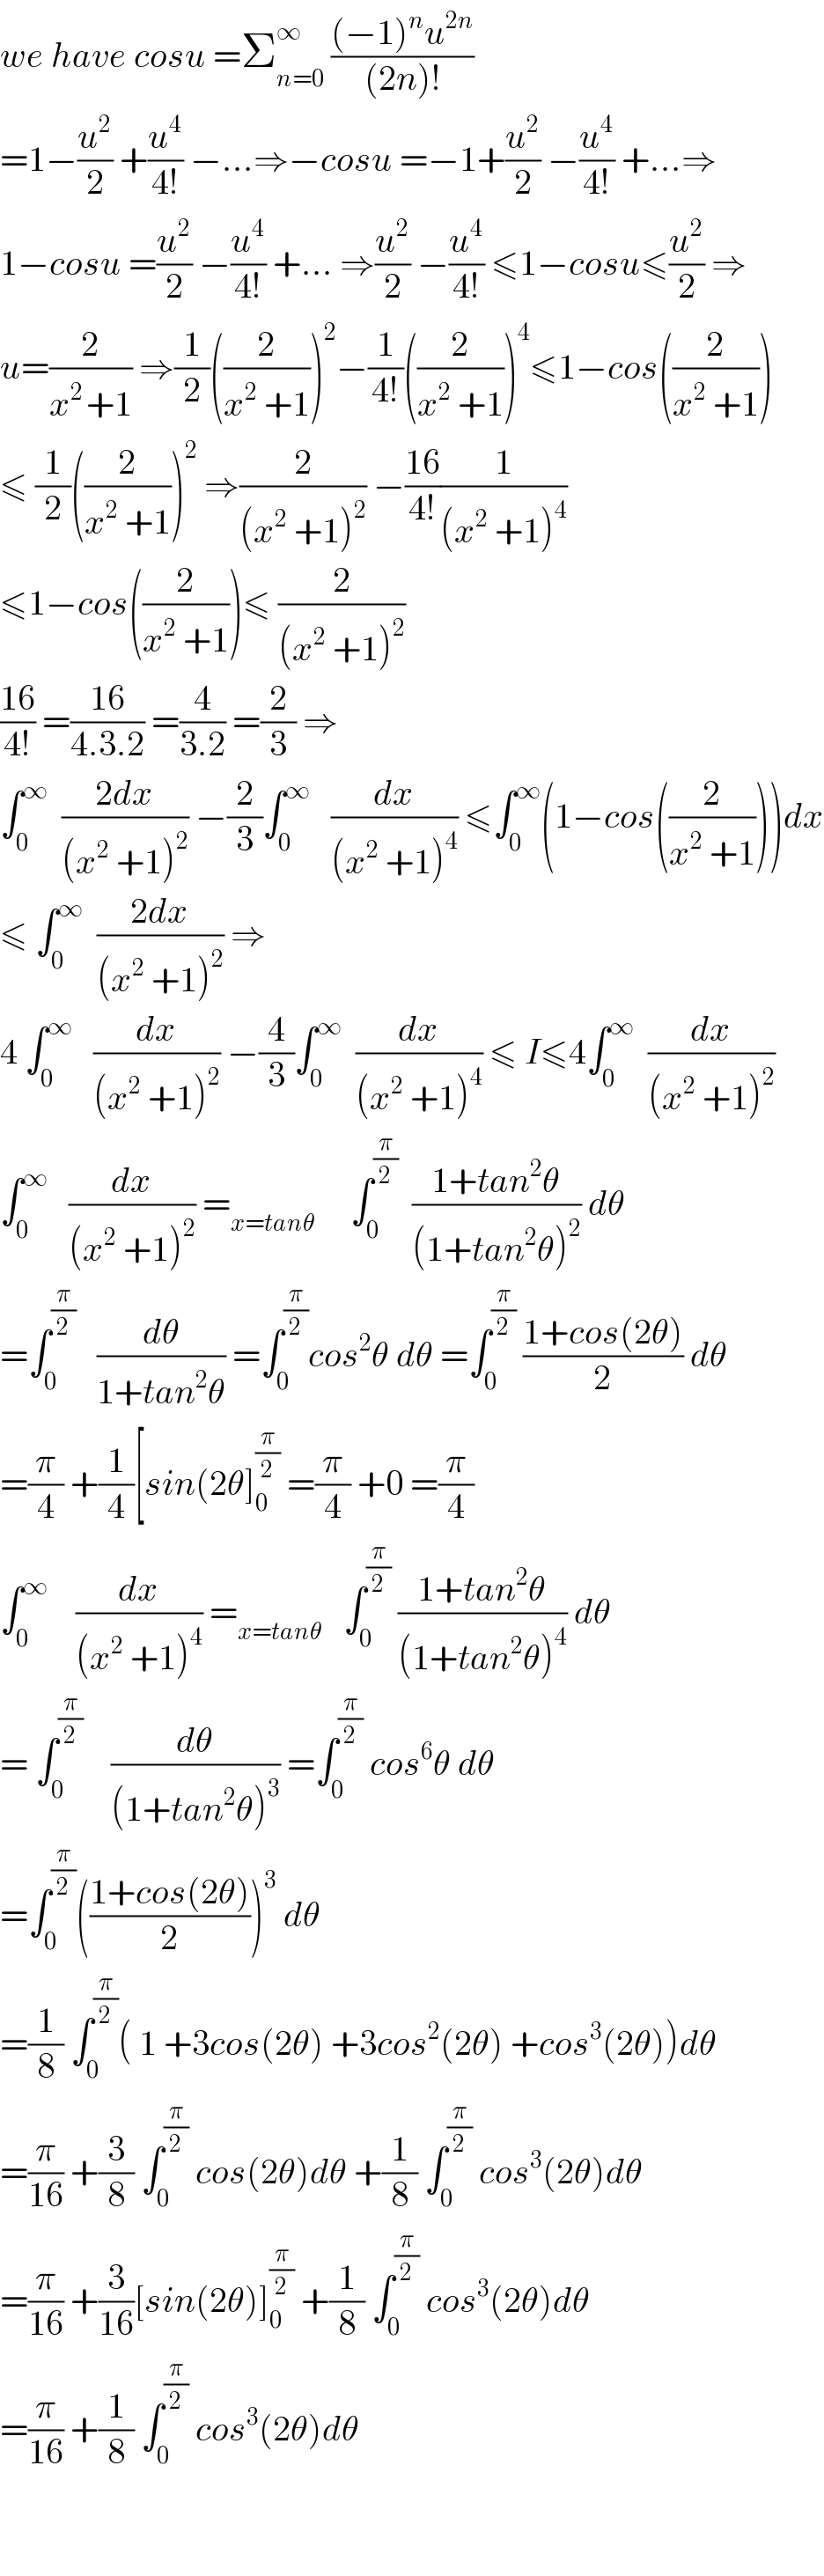 we have cosu =Σ_(n=0) ^∞  (((−1)^n u^(2n) )/((2n)!))  =1−(u^2 /2) +(u^4 /(4!)) −...⇒−cosu =−1+(u^2 /2) −(u^4 /(4!)) +...⇒  1−cosu =(u^2 /2) −(u^4 /(4!)) +... ⇒(u^2 /2) −(u^4 /(4!)) ≤1−cosu≤(u^2 /2) ⇒  u=(2/(x^(2 ) +1)) ⇒(1/2)((2/(x^2  +1)))^2 −(1/(4!))((2/(x^2  +1)))^4 ≤1−cos((2/(x^2  +1)))  ≤ (1/2)((2/(x^2  +1)))^2  ⇒(2/((x^2  +1)^2 )) −((16)/(4!))(1/((x^2  +1)^4 ))  ≤1−cos((2/(x^2  +1)))≤ (2/((x^2  +1)^2 ))  ((16)/(4!)) =((16)/(4.3.2)) =(4/(3.2)) =(2/3) ⇒  ∫_0 ^∞   ((2dx)/((x^2  +1)^2 )) −(2/3)∫_0 ^∞    (dx/((x^2  +1)^4 )) ≤∫_0 ^∞ (1−cos((2/(x^2  +1))))dx  ≤ ∫_0 ^∞   ((2dx)/((x^2  +1)^2 )) ⇒  4 ∫_0 ^∞    (dx/((x^2  +1)^2 )) −(4/3)∫_0 ^∞   (dx/((x^2  +1)^4 )) ≤ I≤4∫_0 ^∞   (dx/((x^2  +1)^2 ))  ∫_0 ^∞    (dx/((x^2  +1)^2 )) =_(x=tanθ)      ∫_0 ^(π/2)   ((1+tan^2 θ)/((1+tan^2 θ)^2 )) dθ  =∫_0 ^(π/2)    (dθ/(1+tan^2 θ)) =∫_0 ^(π/2) cos^2 θ dθ =∫_0 ^(π/2)  ((1+cos(2θ))/2) dθ  =(π/4) +(1/4)[sin(2θ]_0 ^(π/2)  =(π/4) +0 =(π/4)  ∫_0 ^∞     (dx/((x^2  +1)^4 )) =_(x=tanθ)    ∫_0 ^(π/2)  ((1+tan^2 θ)/((1+tan^2 θ)^4 )) dθ  = ∫_0 ^(π/2)     (dθ/((1+tan^2 θ)^3 )) =∫_0 ^(π/2)  cos^6 θ dθ  =∫_0 ^(π/2) (((1+cos(2θ))/2))^3  dθ  =(1/8) ∫_0 ^(π/2) ( 1 +3cos(2θ) +3cos^2 (2θ) +cos^3 (2θ))dθ  =(π/(16)) +(3/8) ∫_0 ^(π/2)  cos(2θ)dθ +(1/8) ∫_0 ^(π/2)  cos^3 (2θ)dθ  =(π/(16)) +(3/(16))[sin(2θ)]_0 ^(π/2)  +(1/8) ∫_0 ^(π/2)  cos^3 (2θ)dθ  =(π/(16)) +(1/8) ∫_0 ^(π/2)  cos^3 (2θ)dθ      